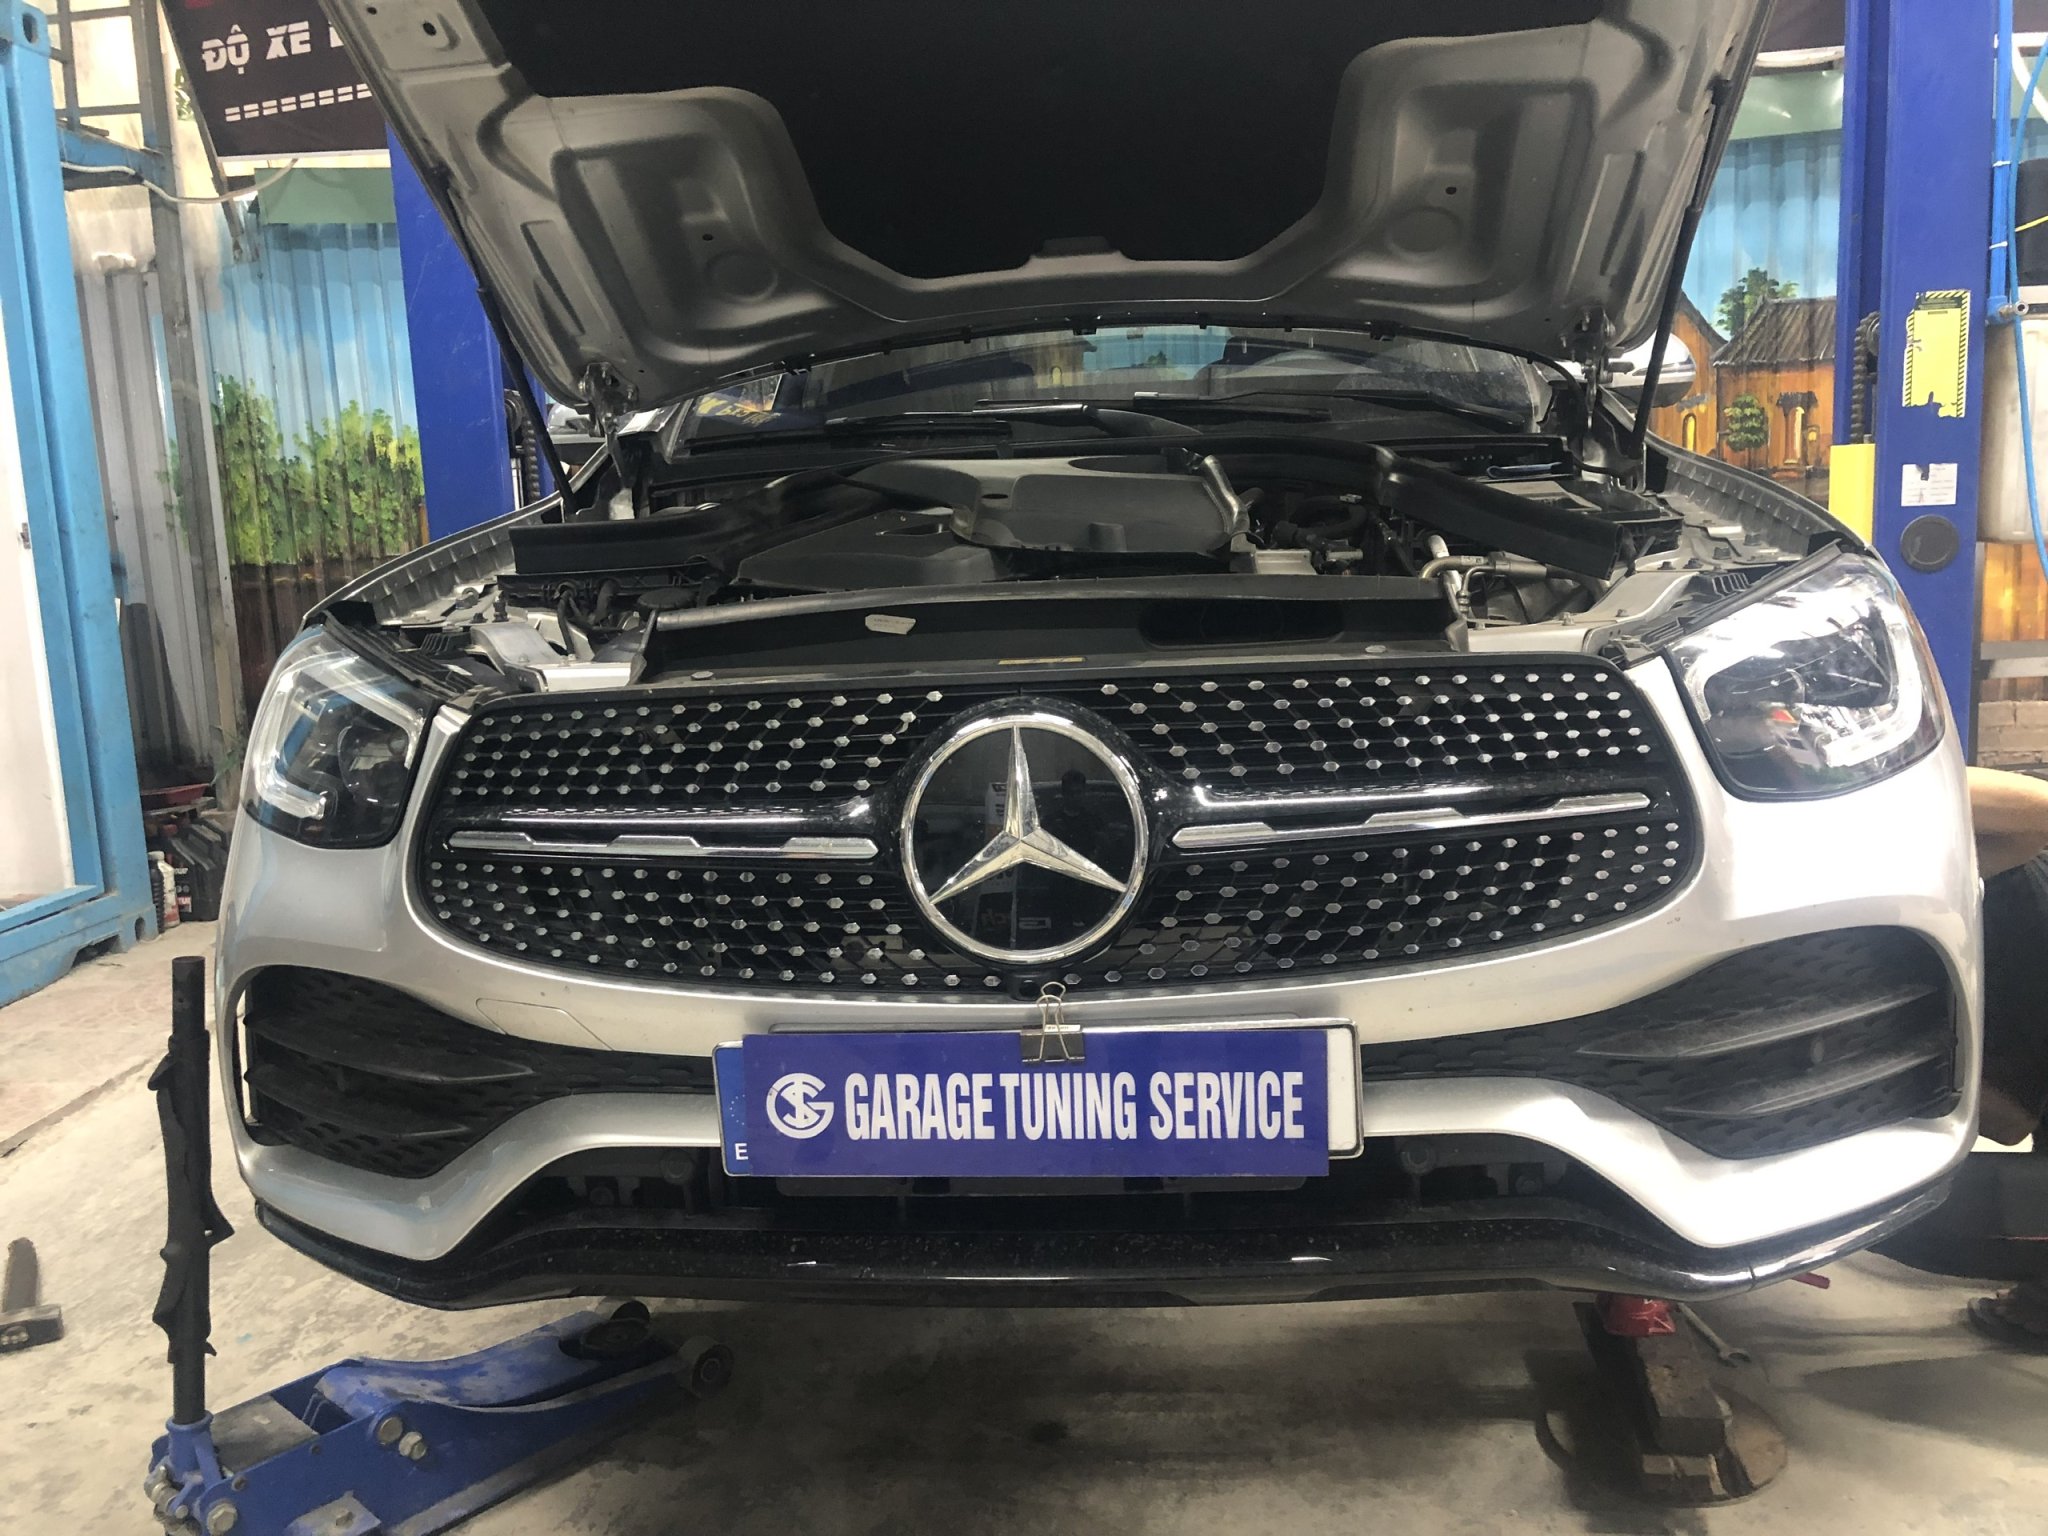 Gara sửa chữa hộp số xe Mercedes uy tín tại thành phố Hồ Chí Minh